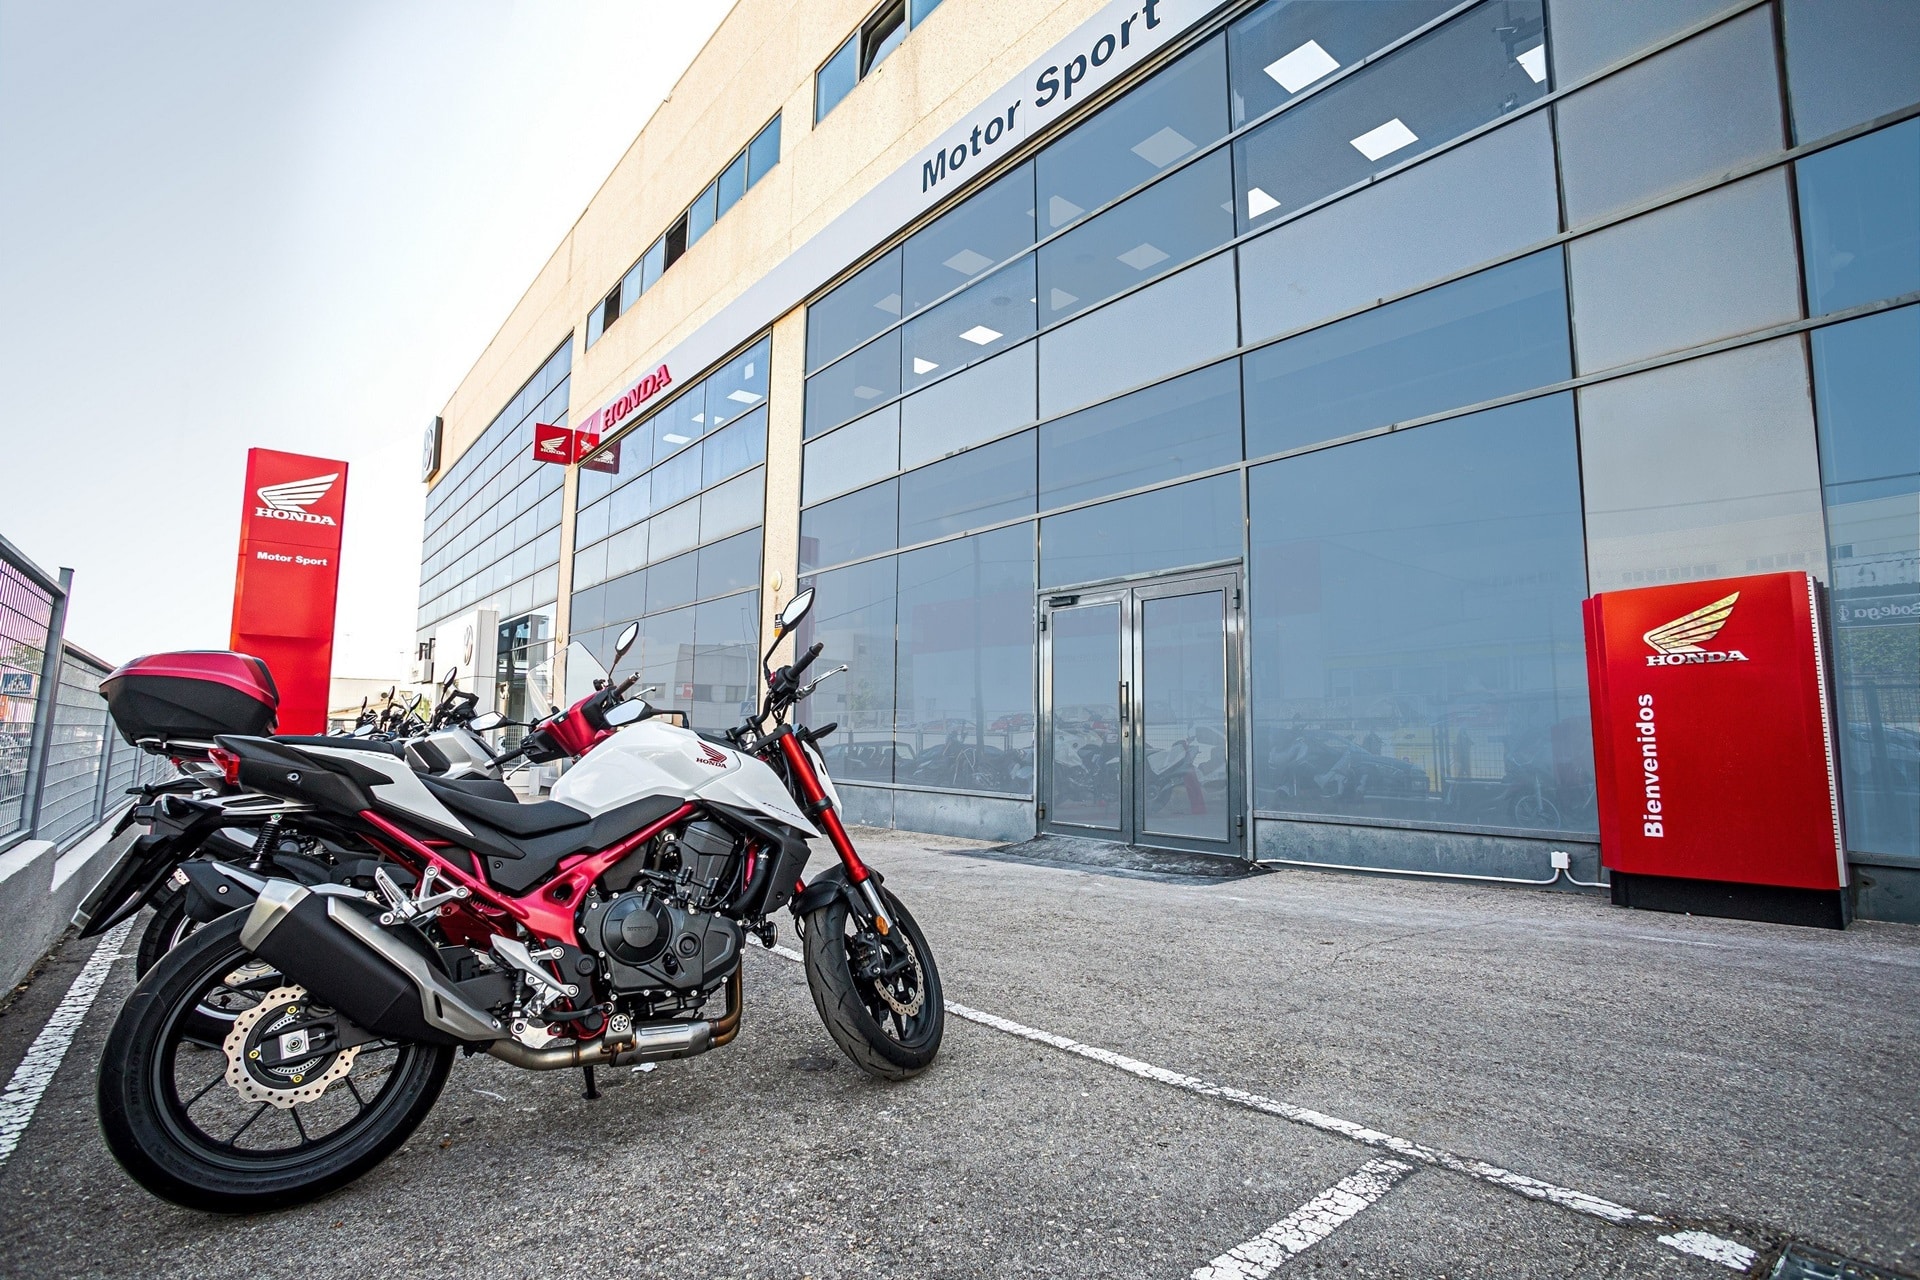 Motor Sport inaugura su nuevo concesionario Honda en Las Rozas, Madrid